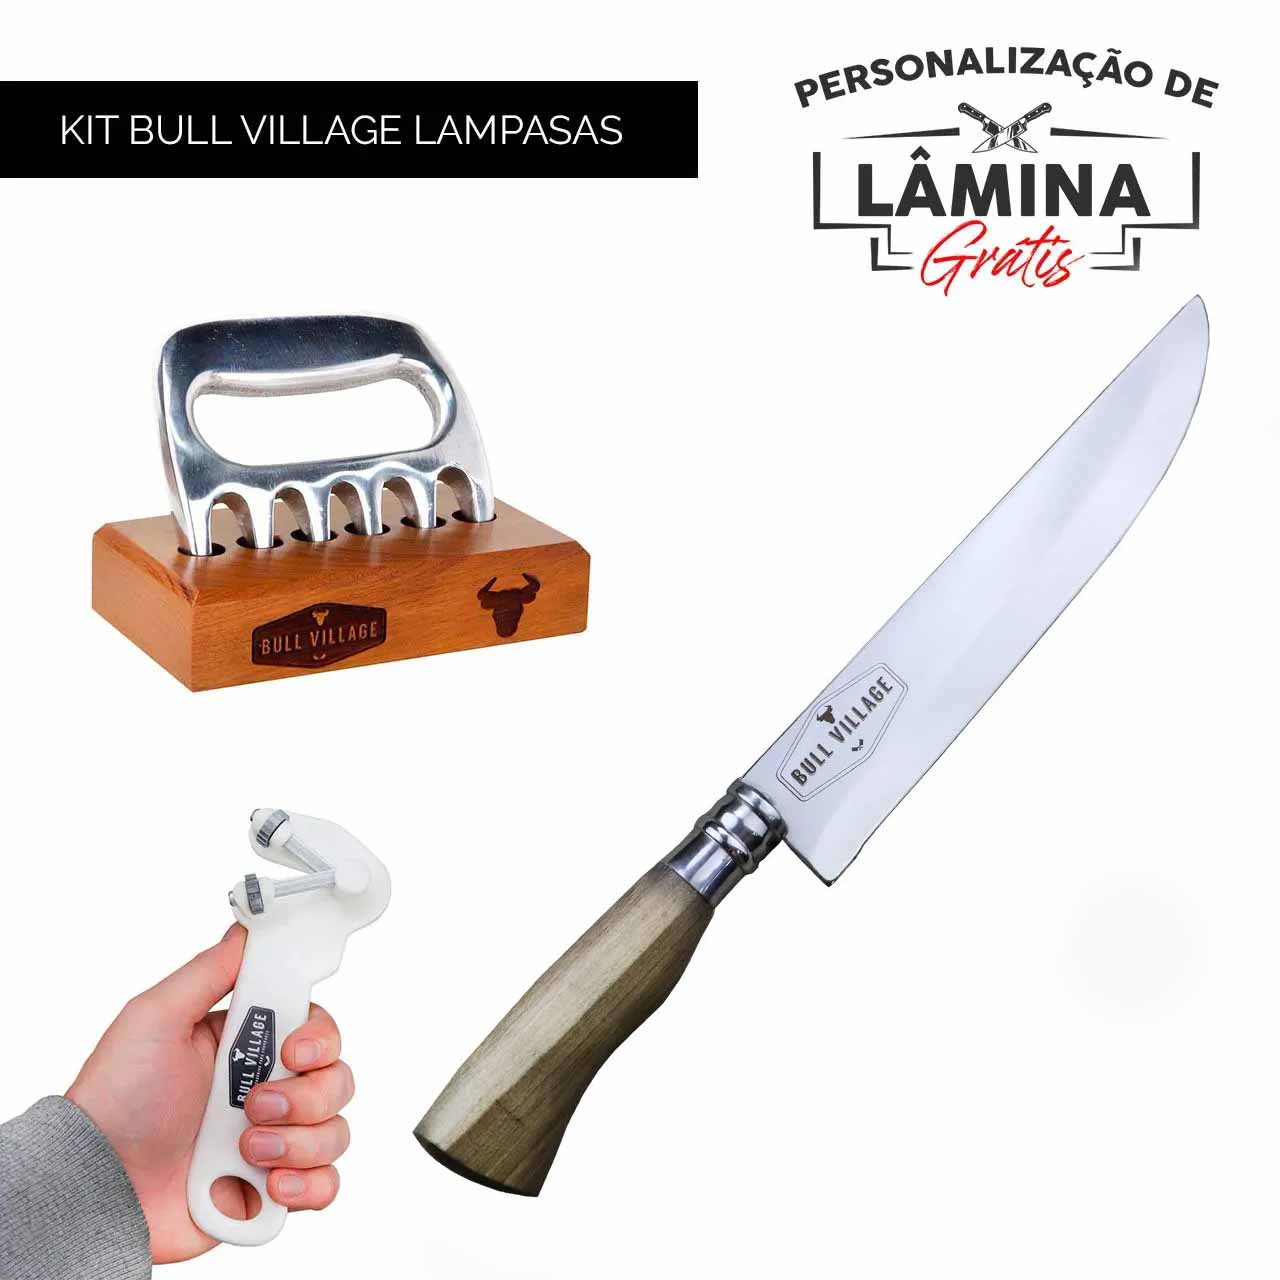 Kit Bull Village Lampasas - Personalização Grátis - Leia a descrição!